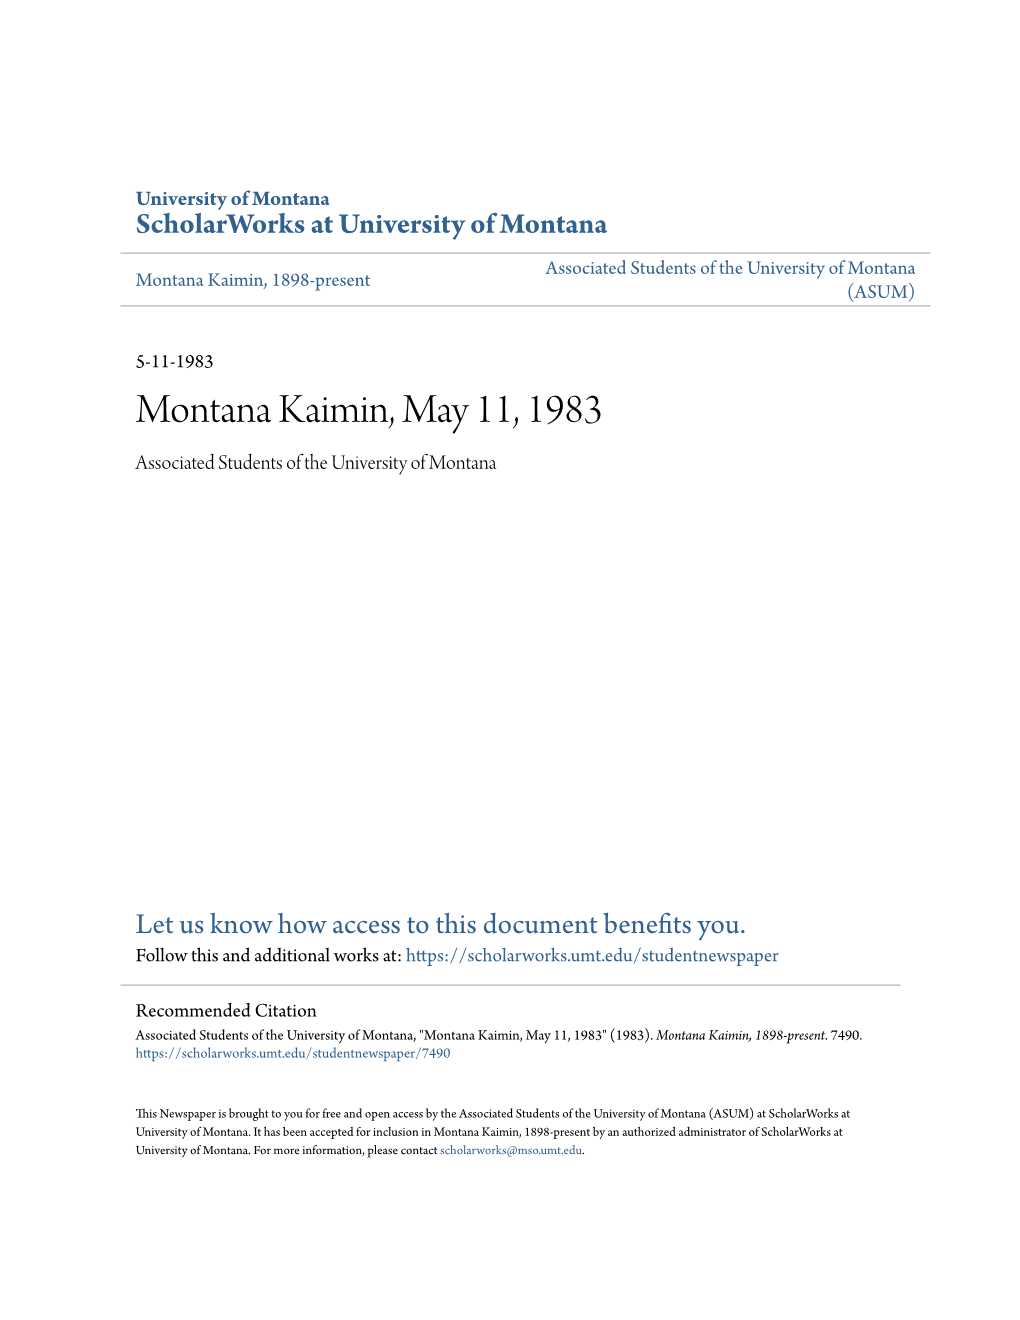 Montana Kaimin, May 11, 1983 Associated Students of the University of Montana